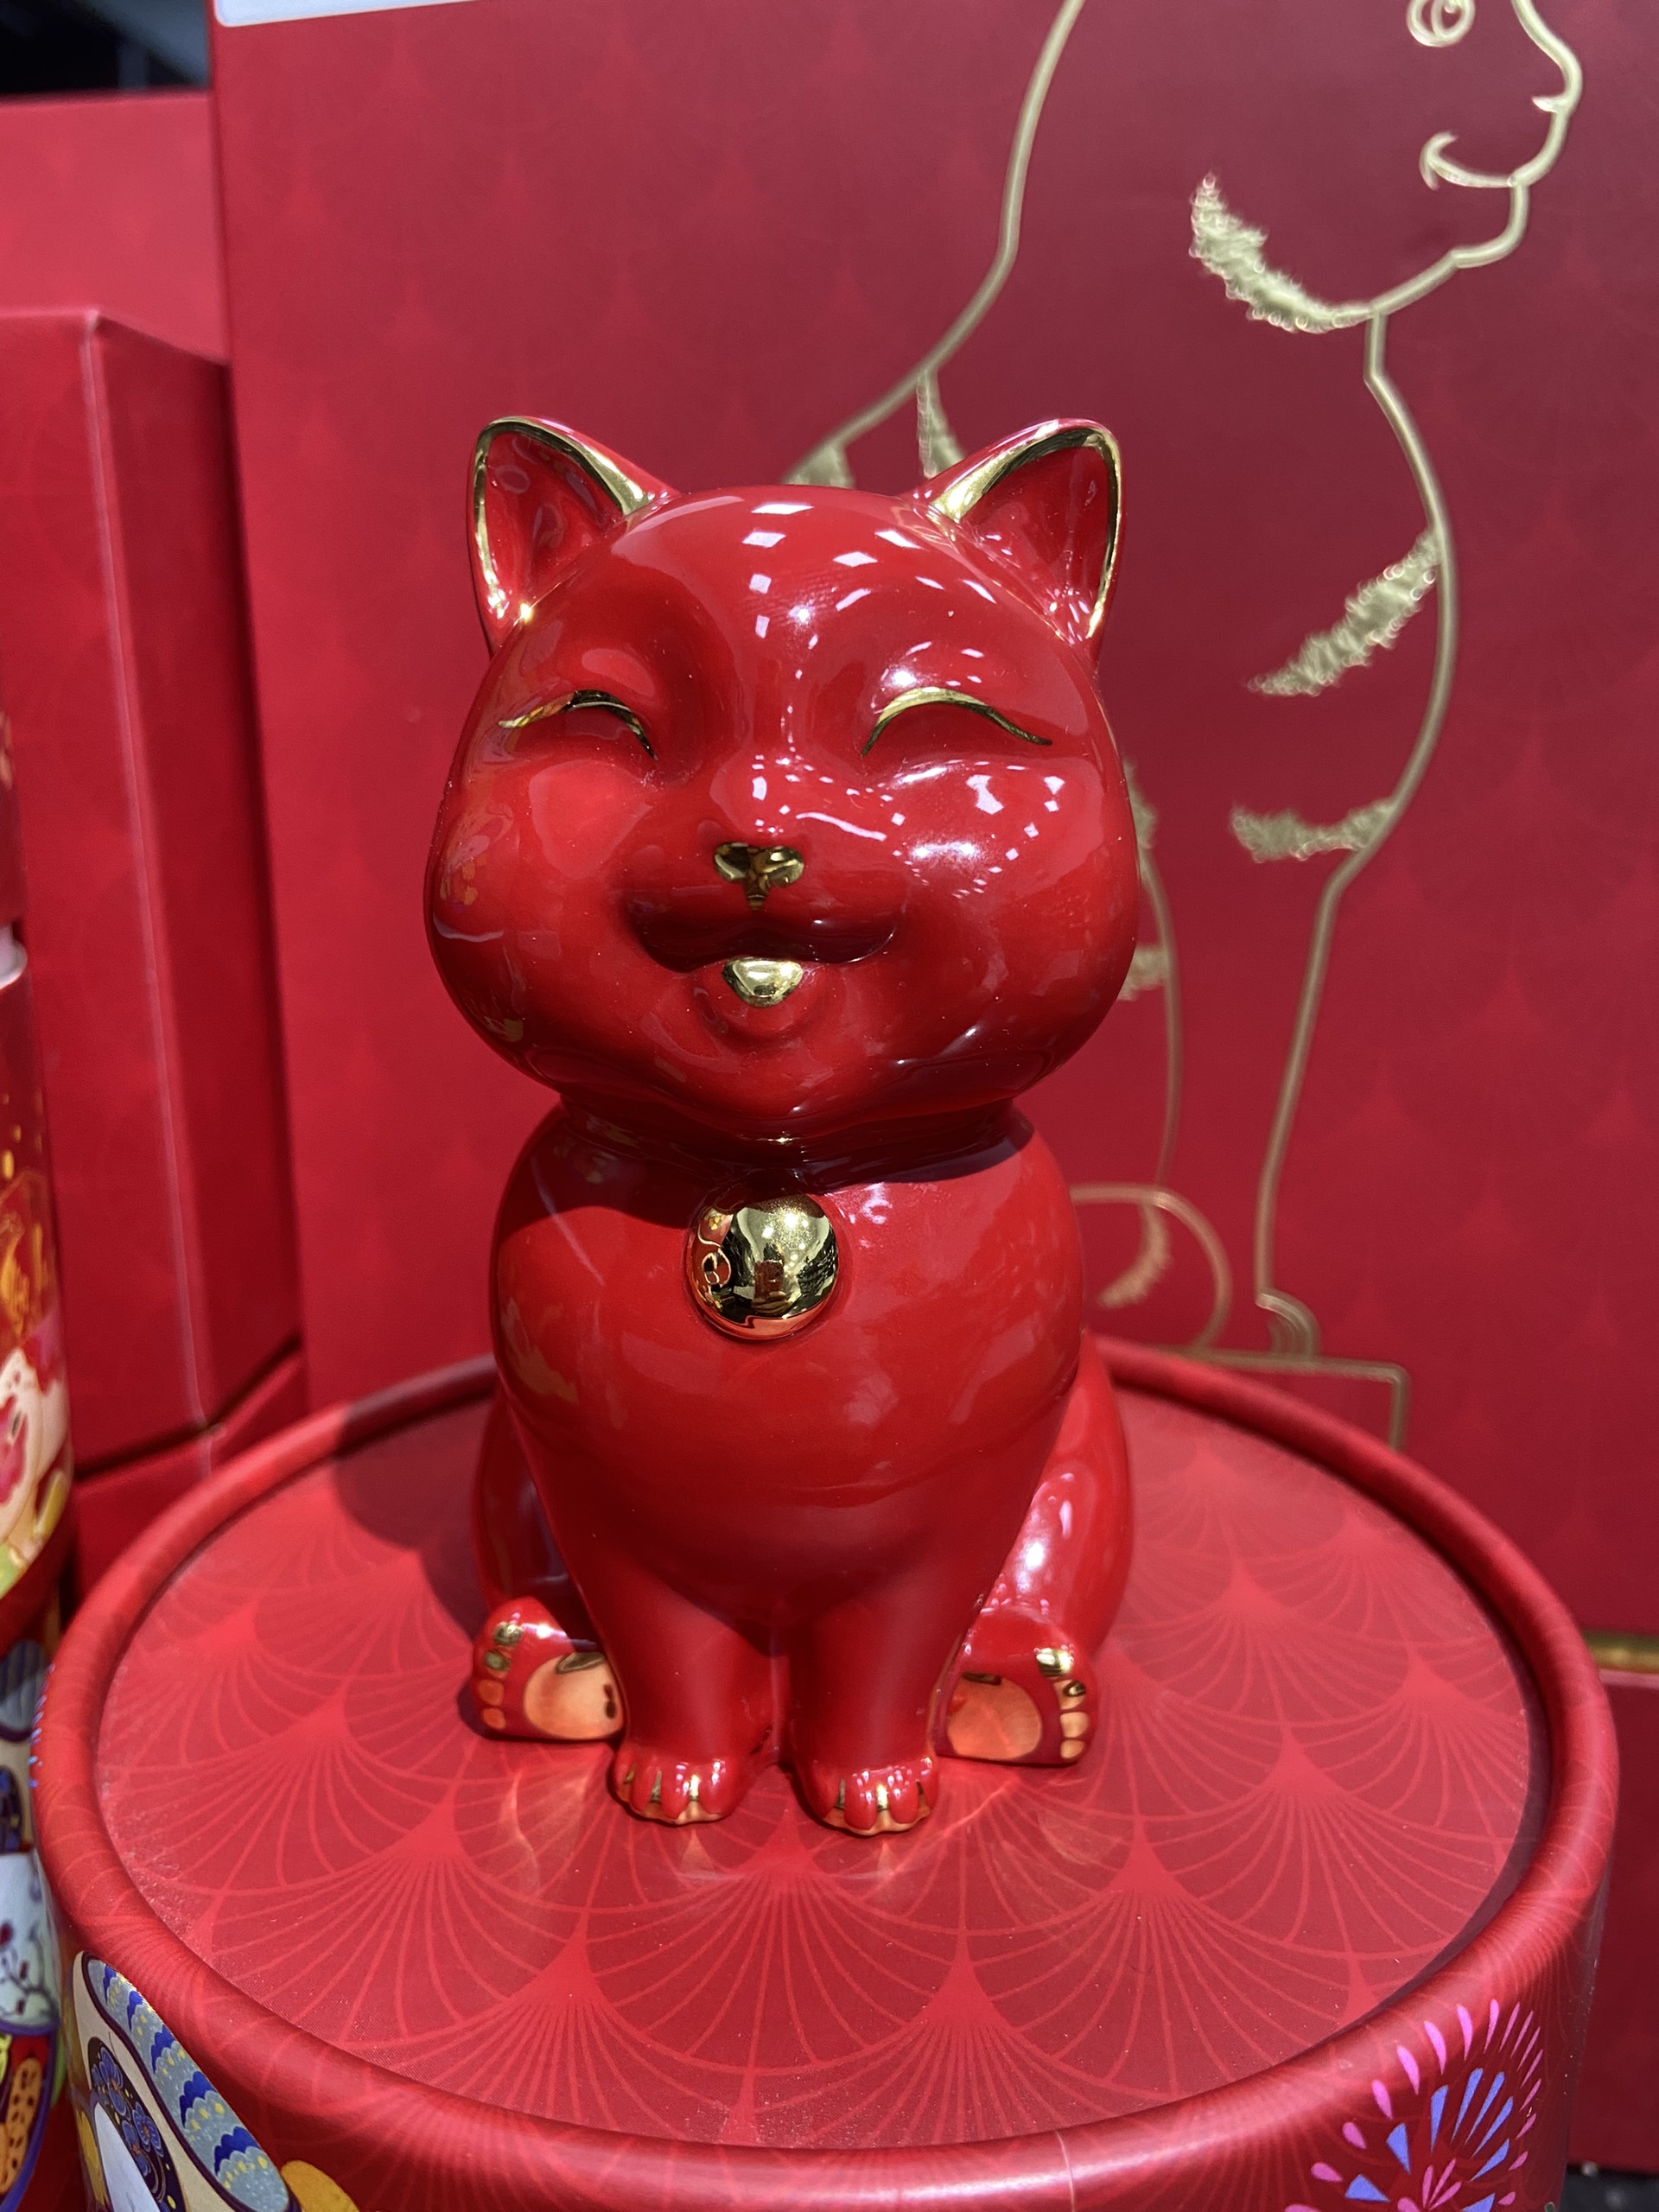 Mèo Vạn Phúc 9.5 cm - Đỏ - Trang trí vàng - Gốm sứ cao cấp Minh Long